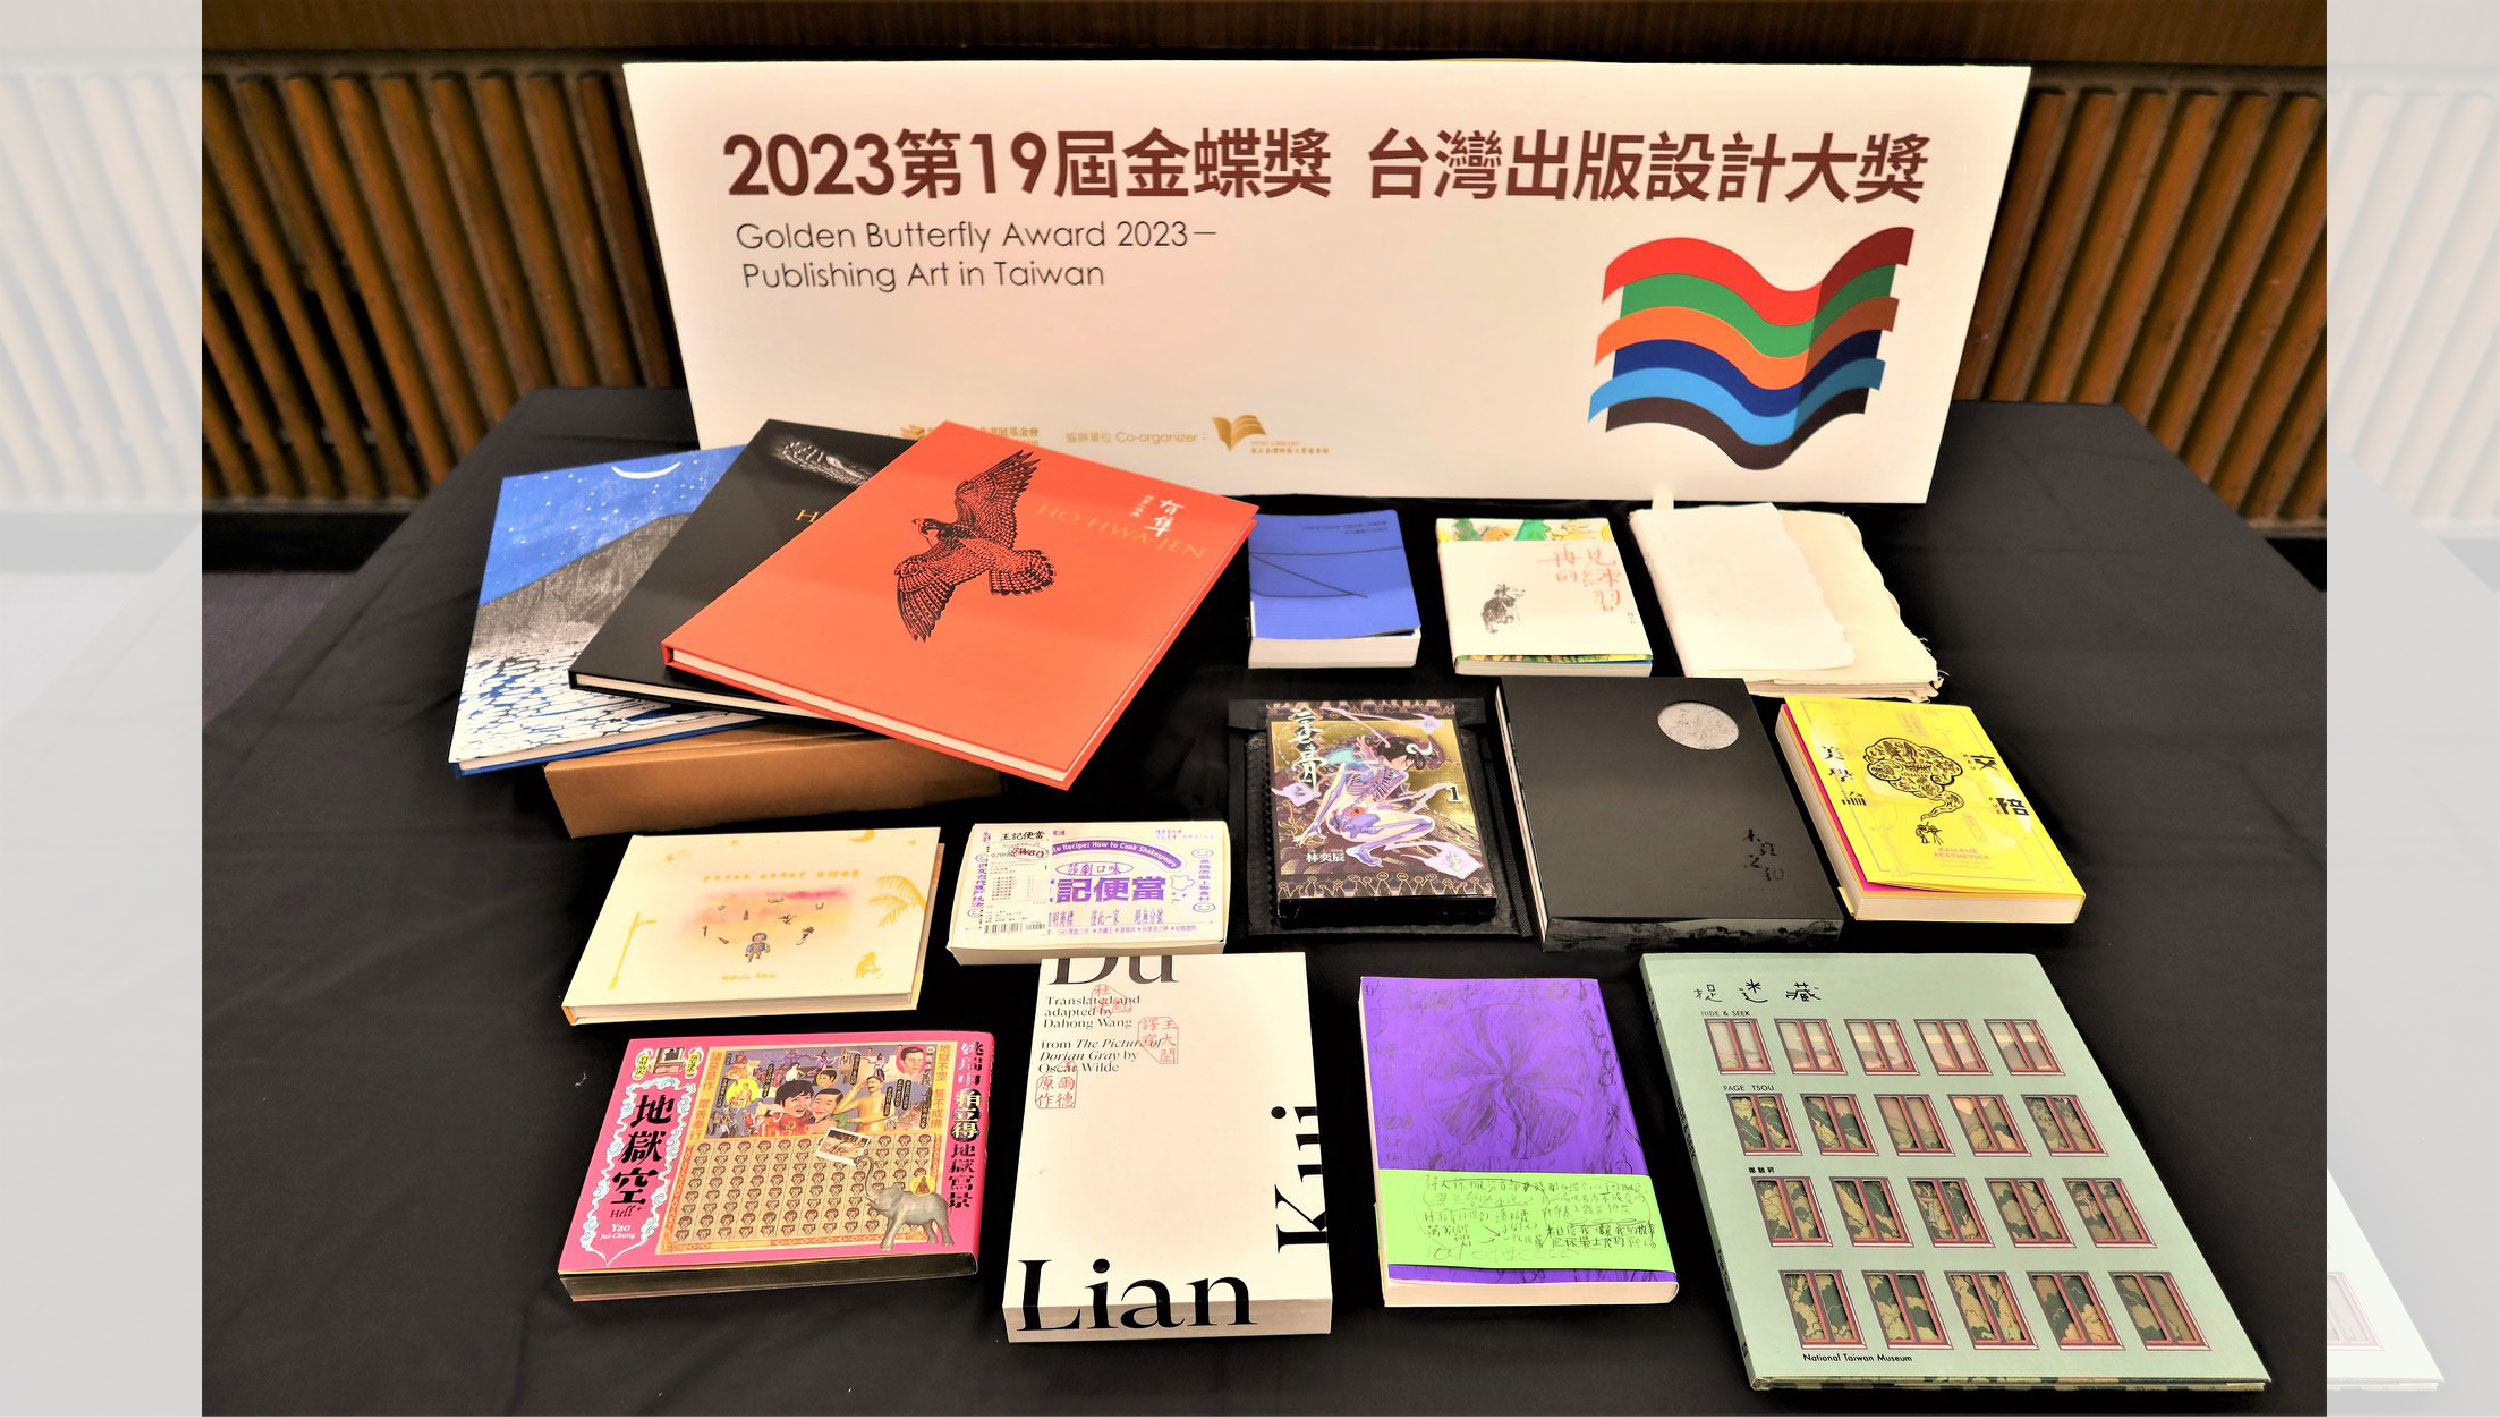 「2023金蝶獎-台灣出版設計大獎」13本入圍名單出爐